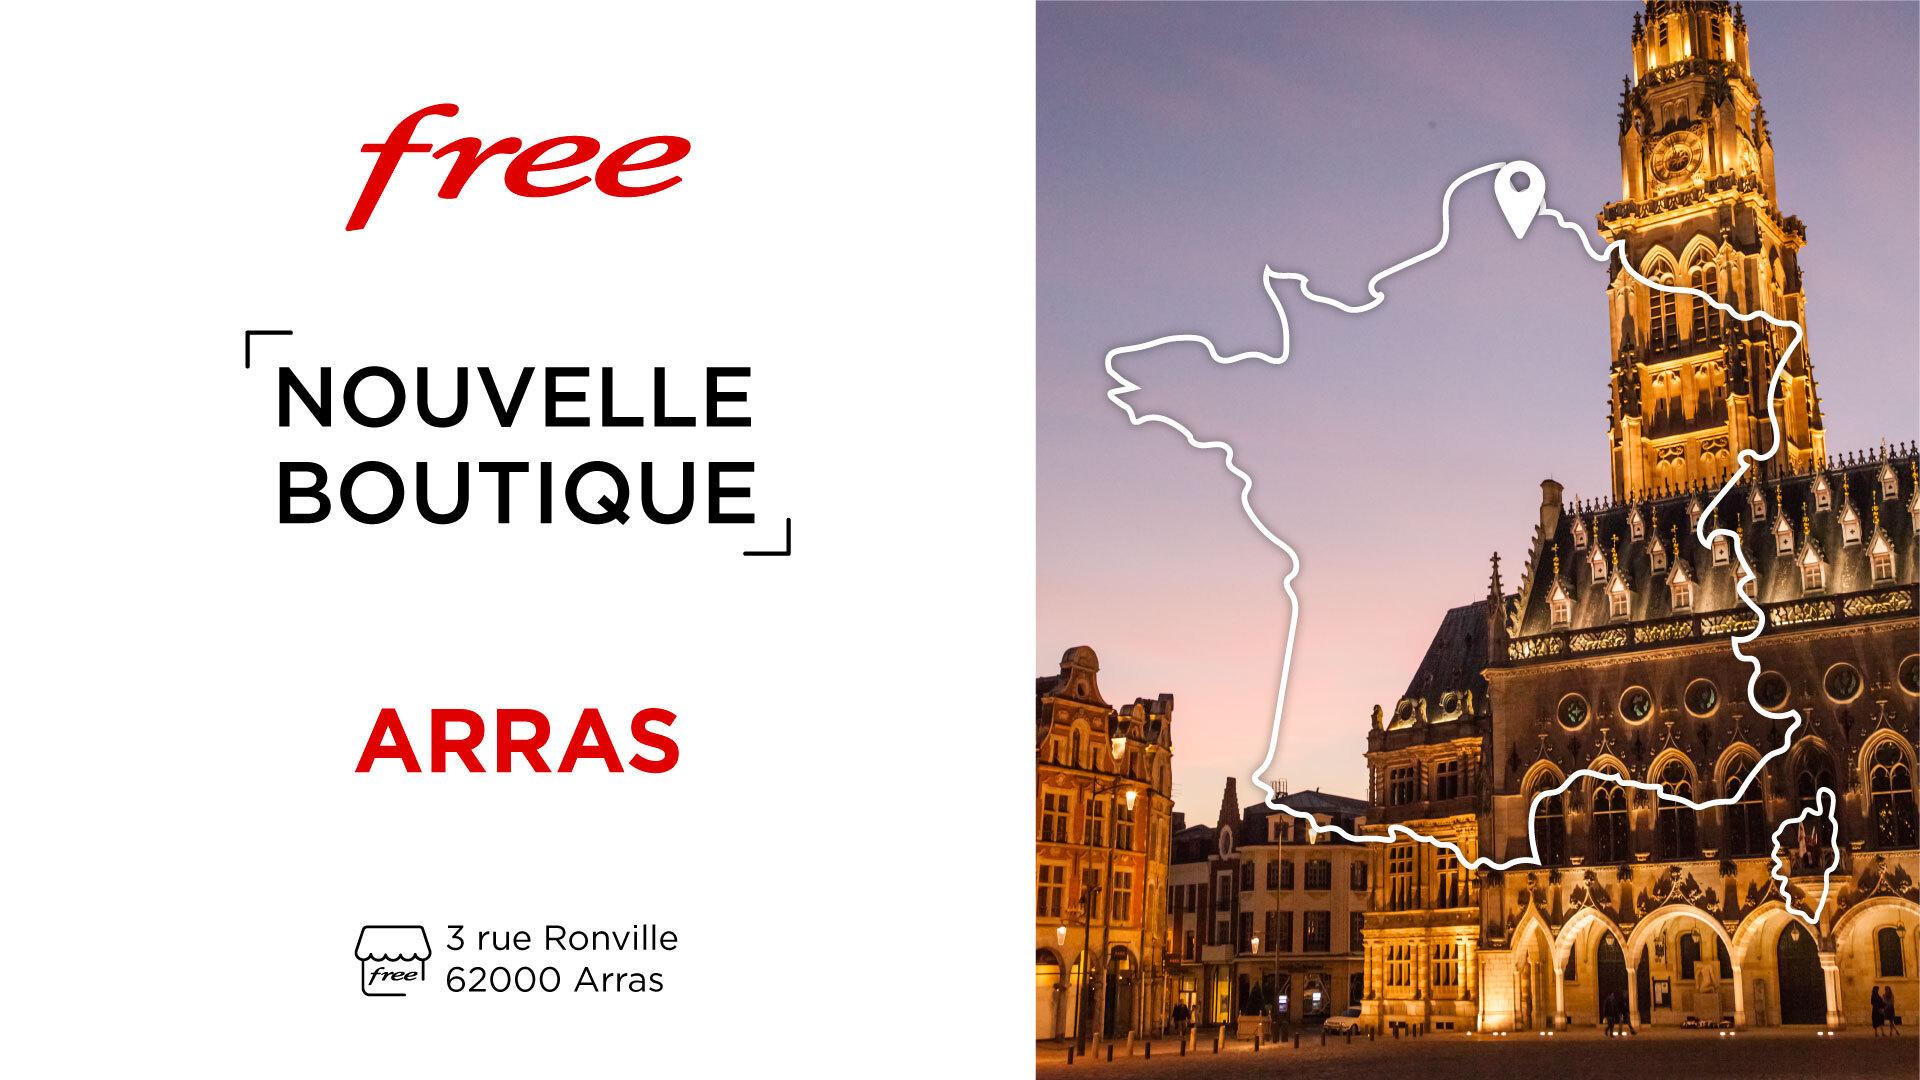 Free Center : découvrez la nouvelle boutique à Arras